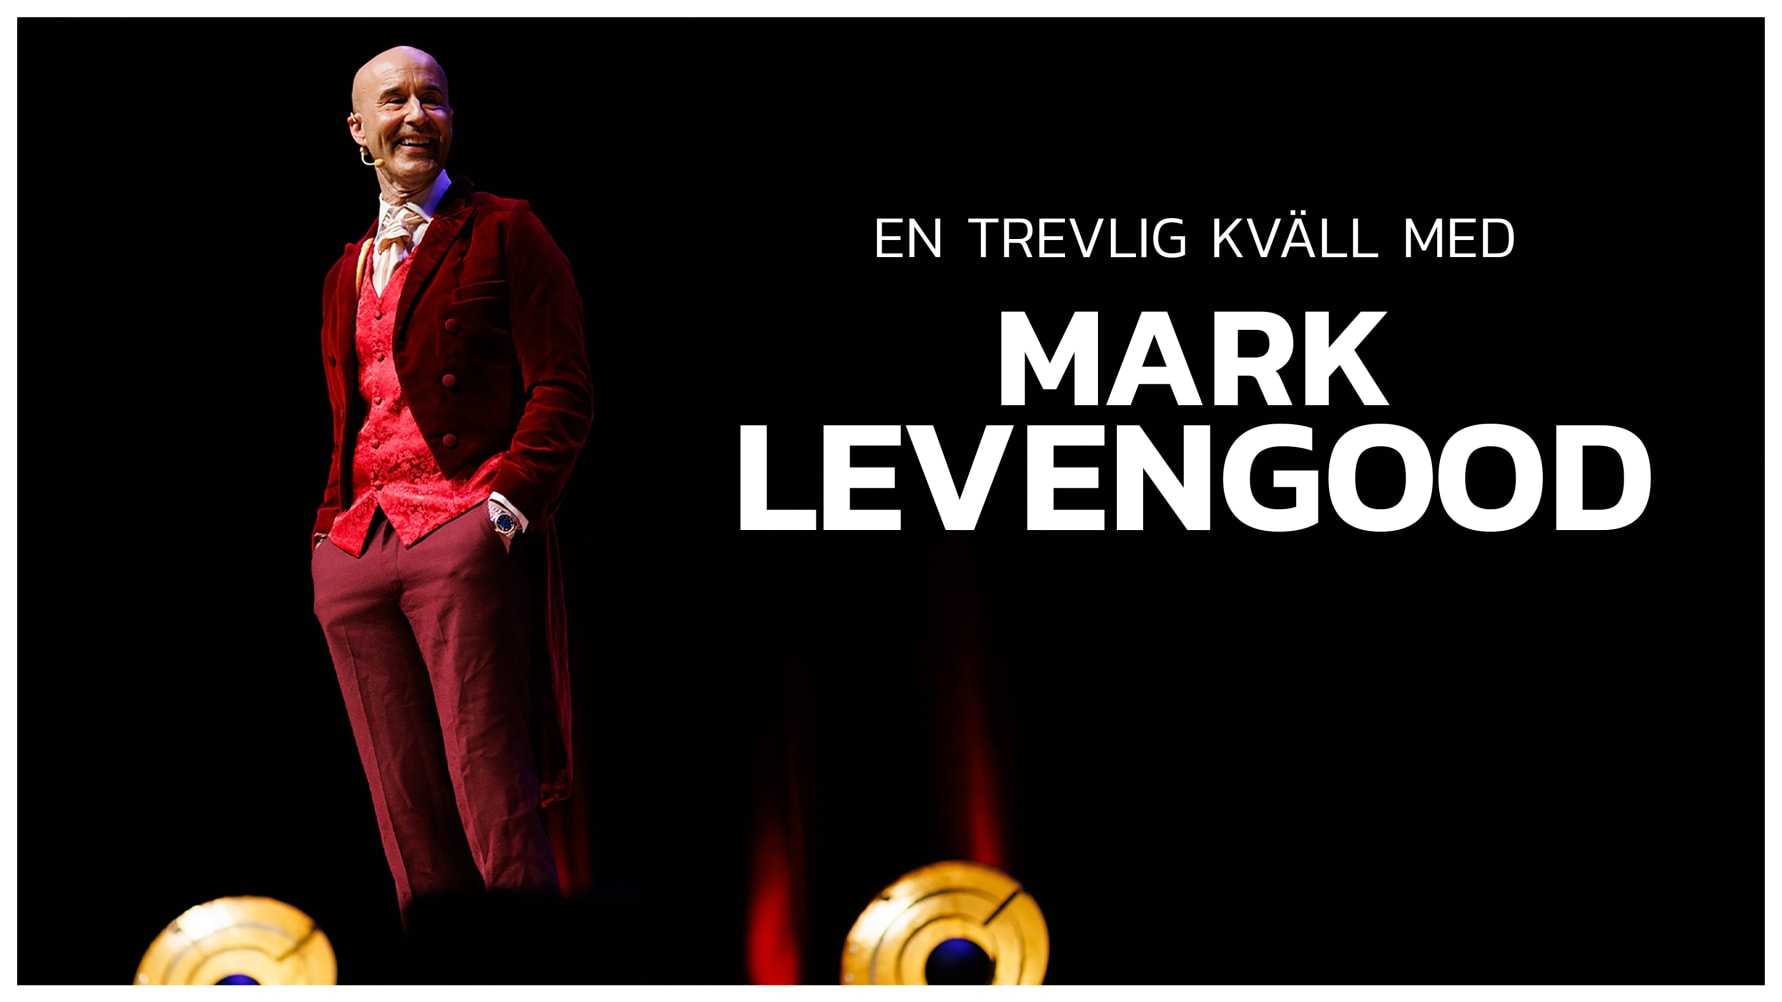 Mark Levengood gör en exklusiv Norrlandsturné! 